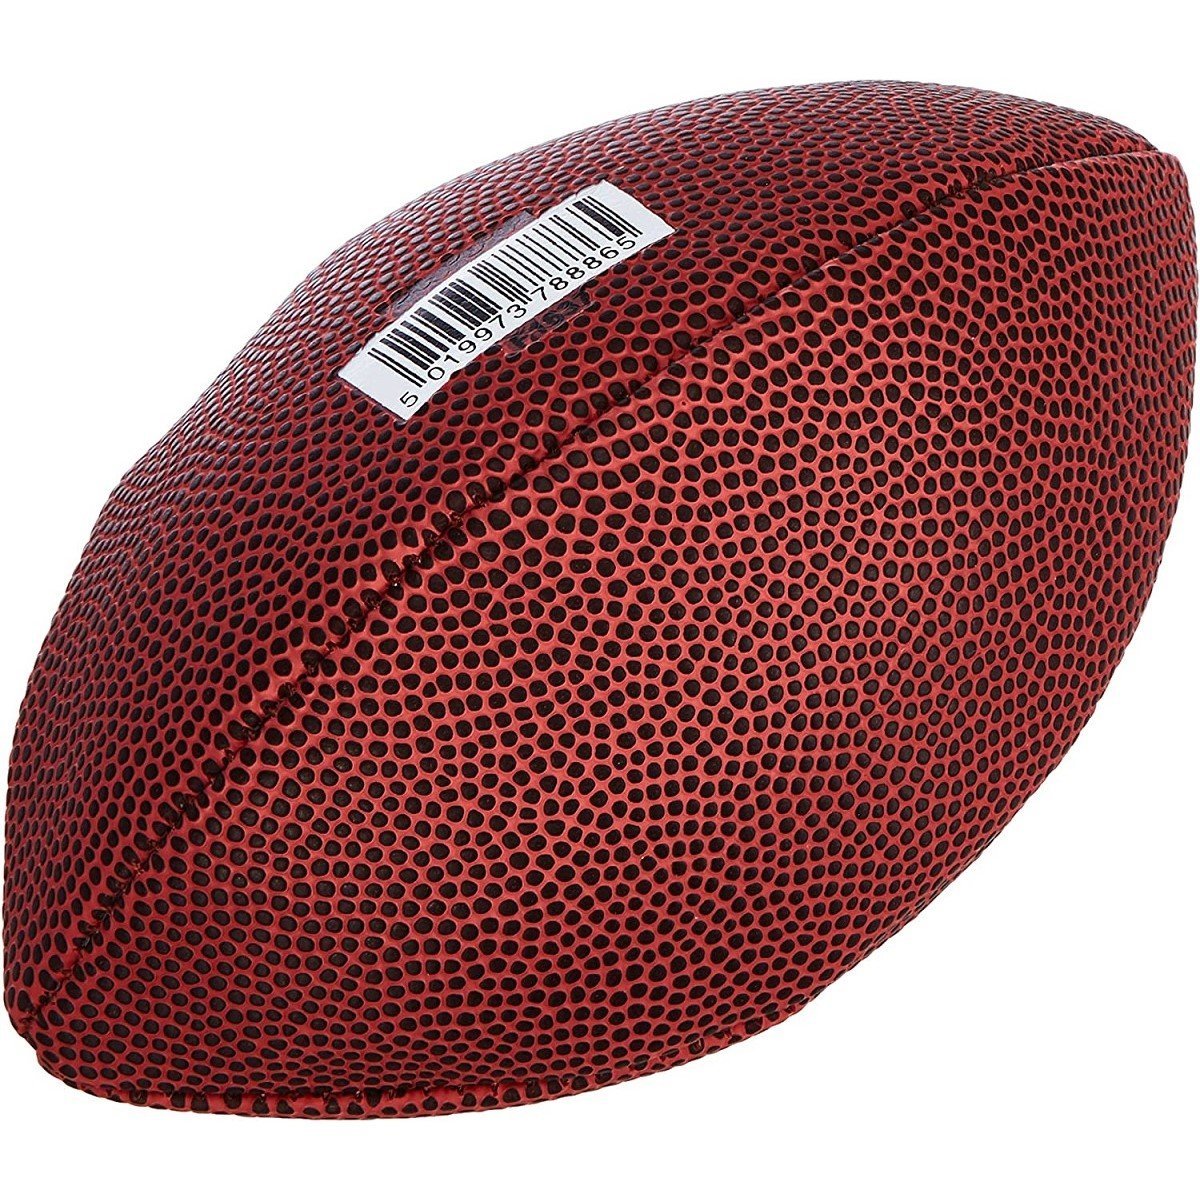 Lopta Wilson NFL Micro Football - hnedá